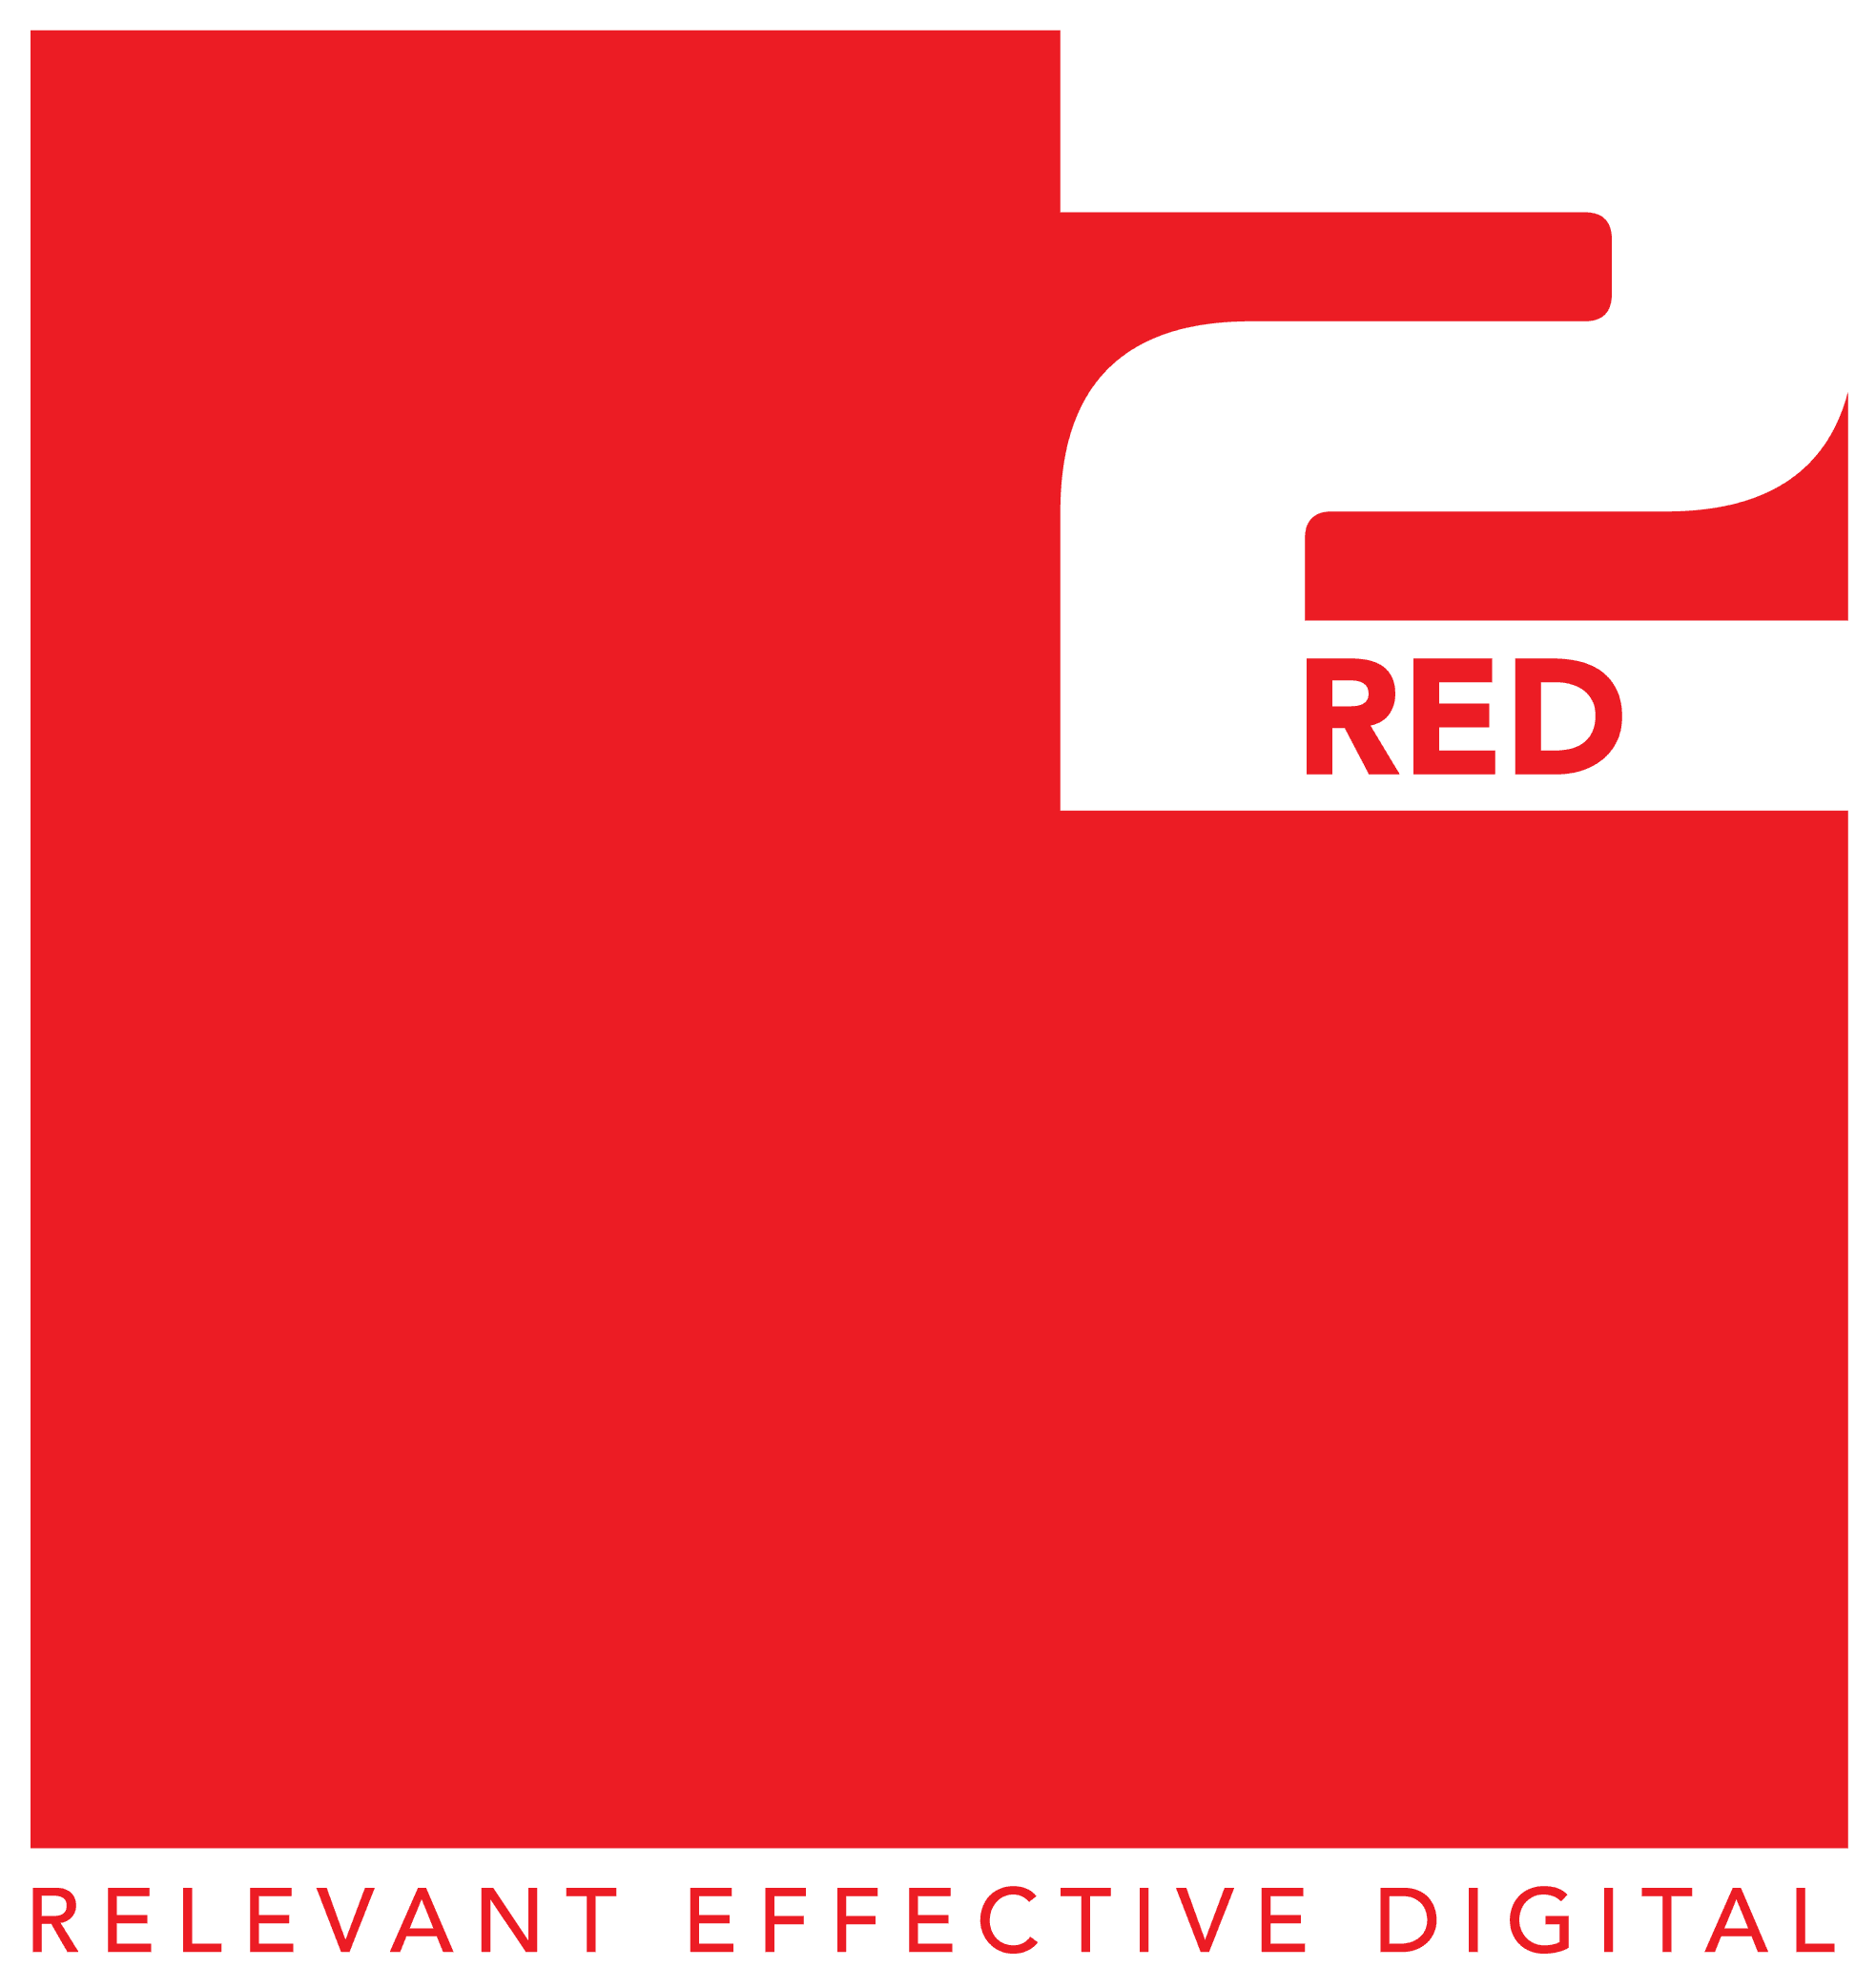 Red2 Digital tuyển dụng - Tìm việc mới nhất, lương thưởng hấp dẫn.